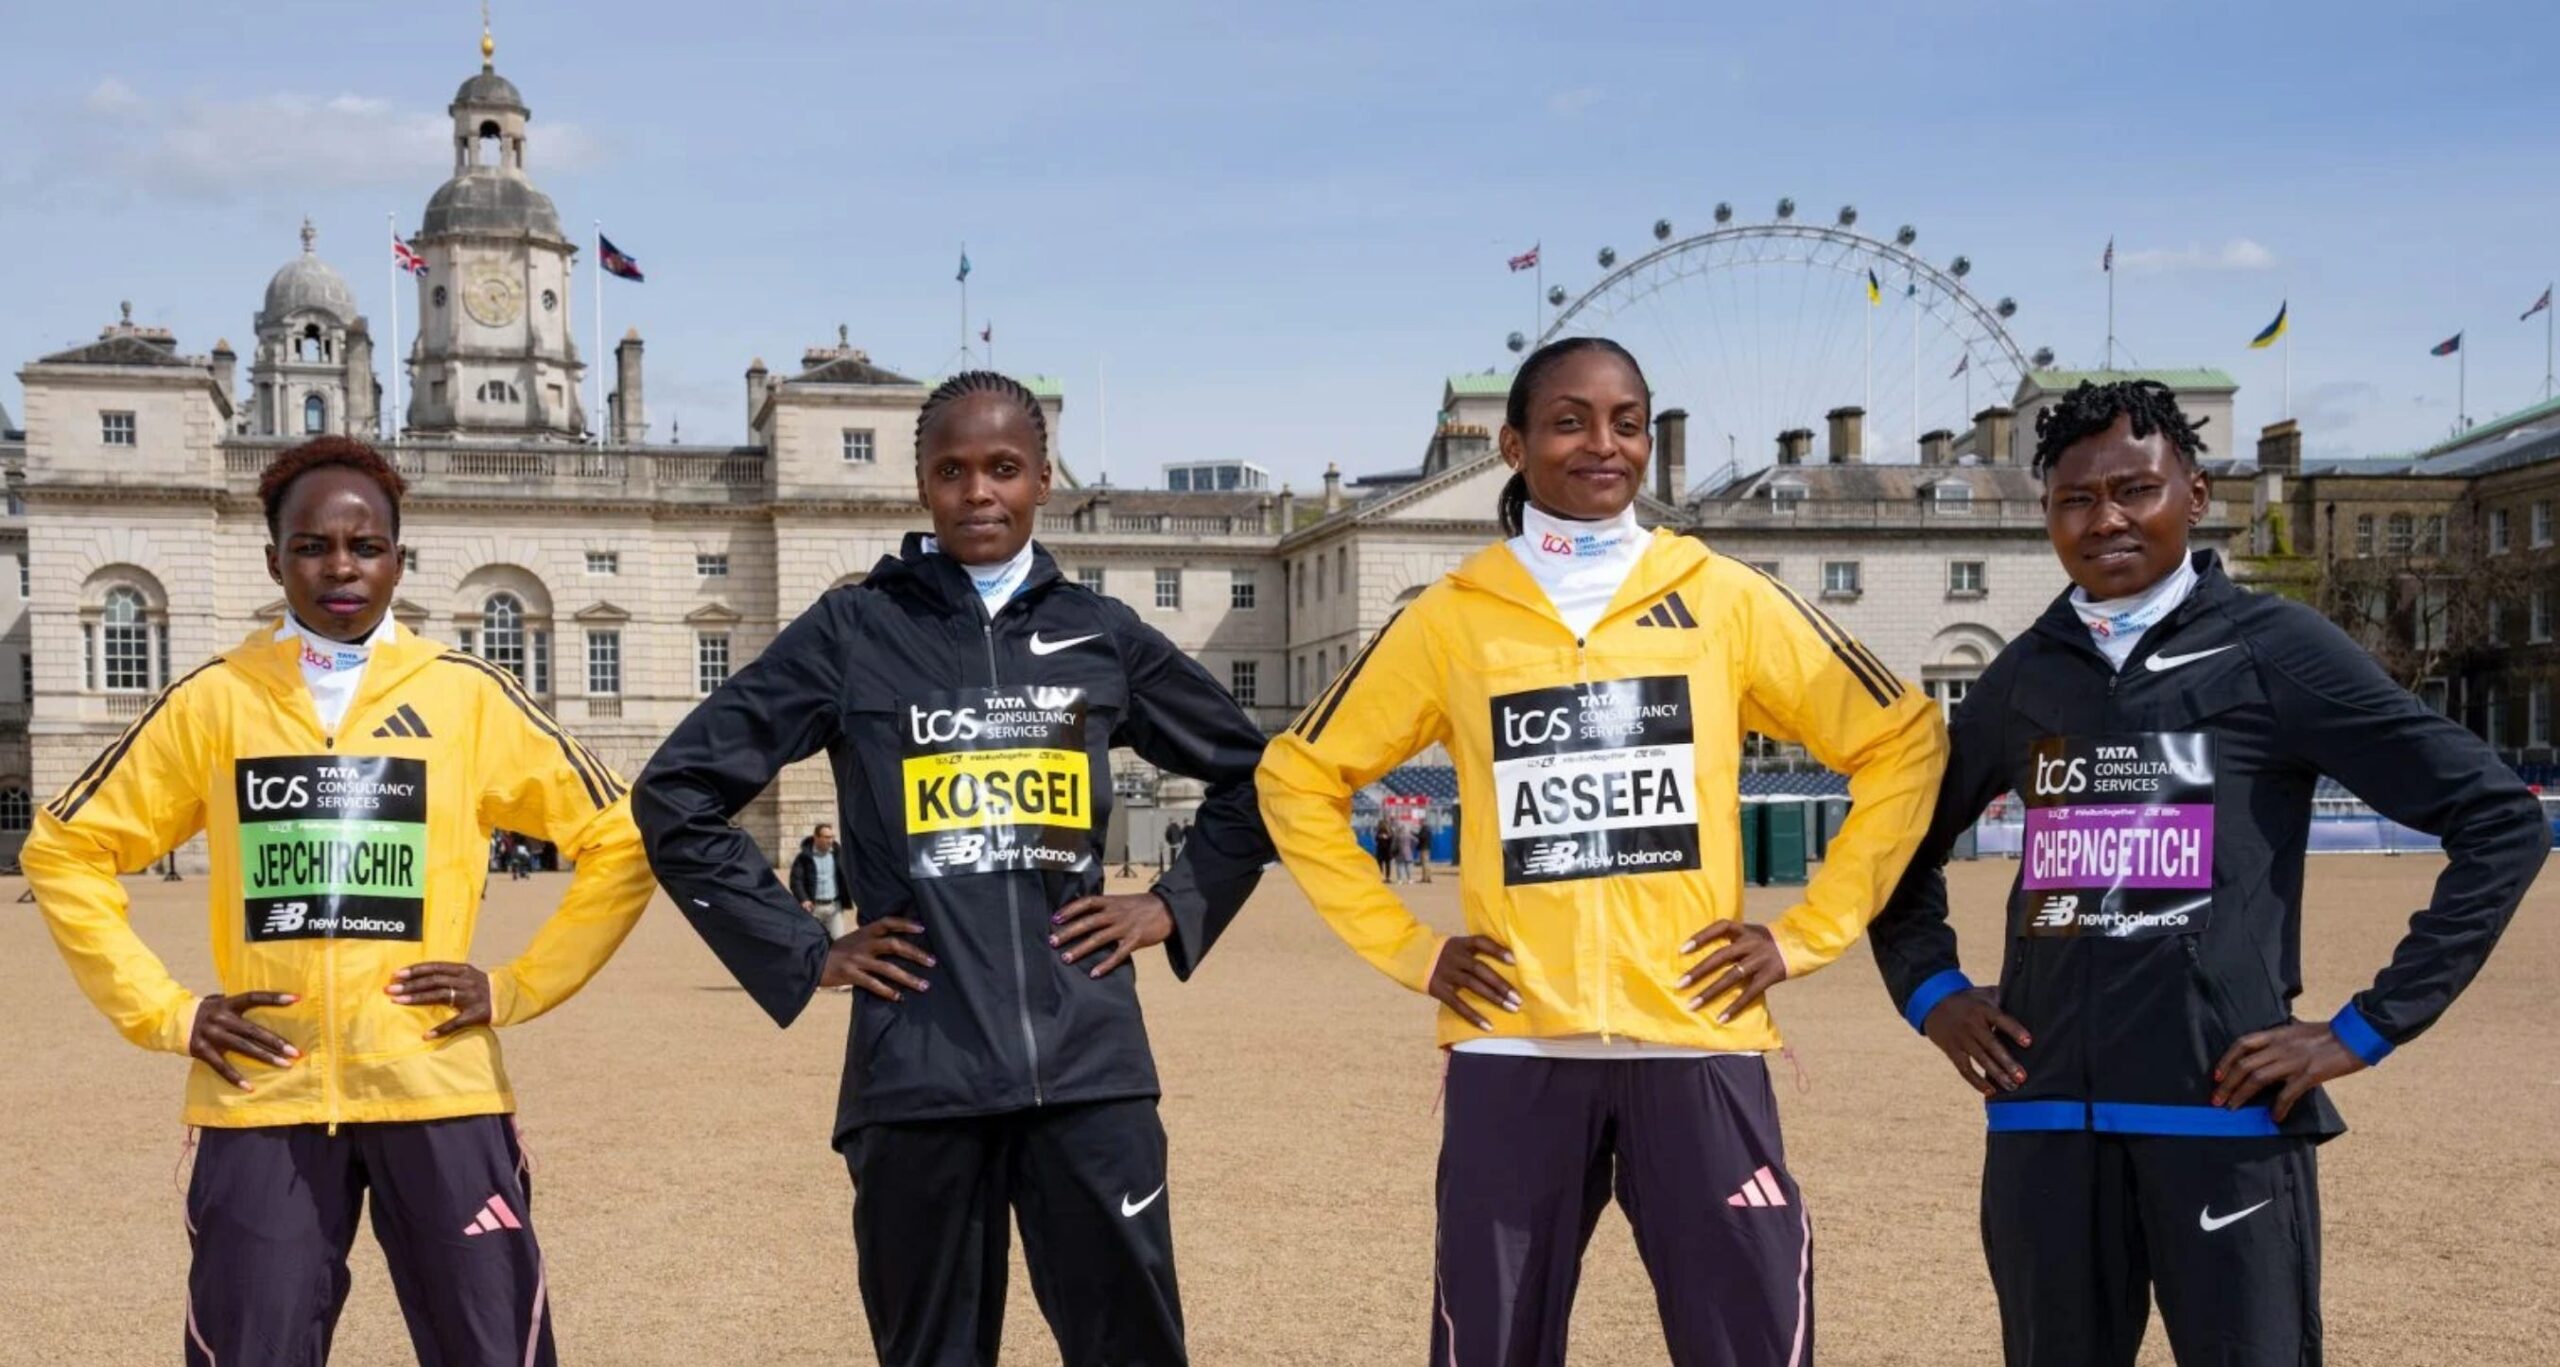 Maratón de Londres: ¿Cómo veo en vivo la carrera?